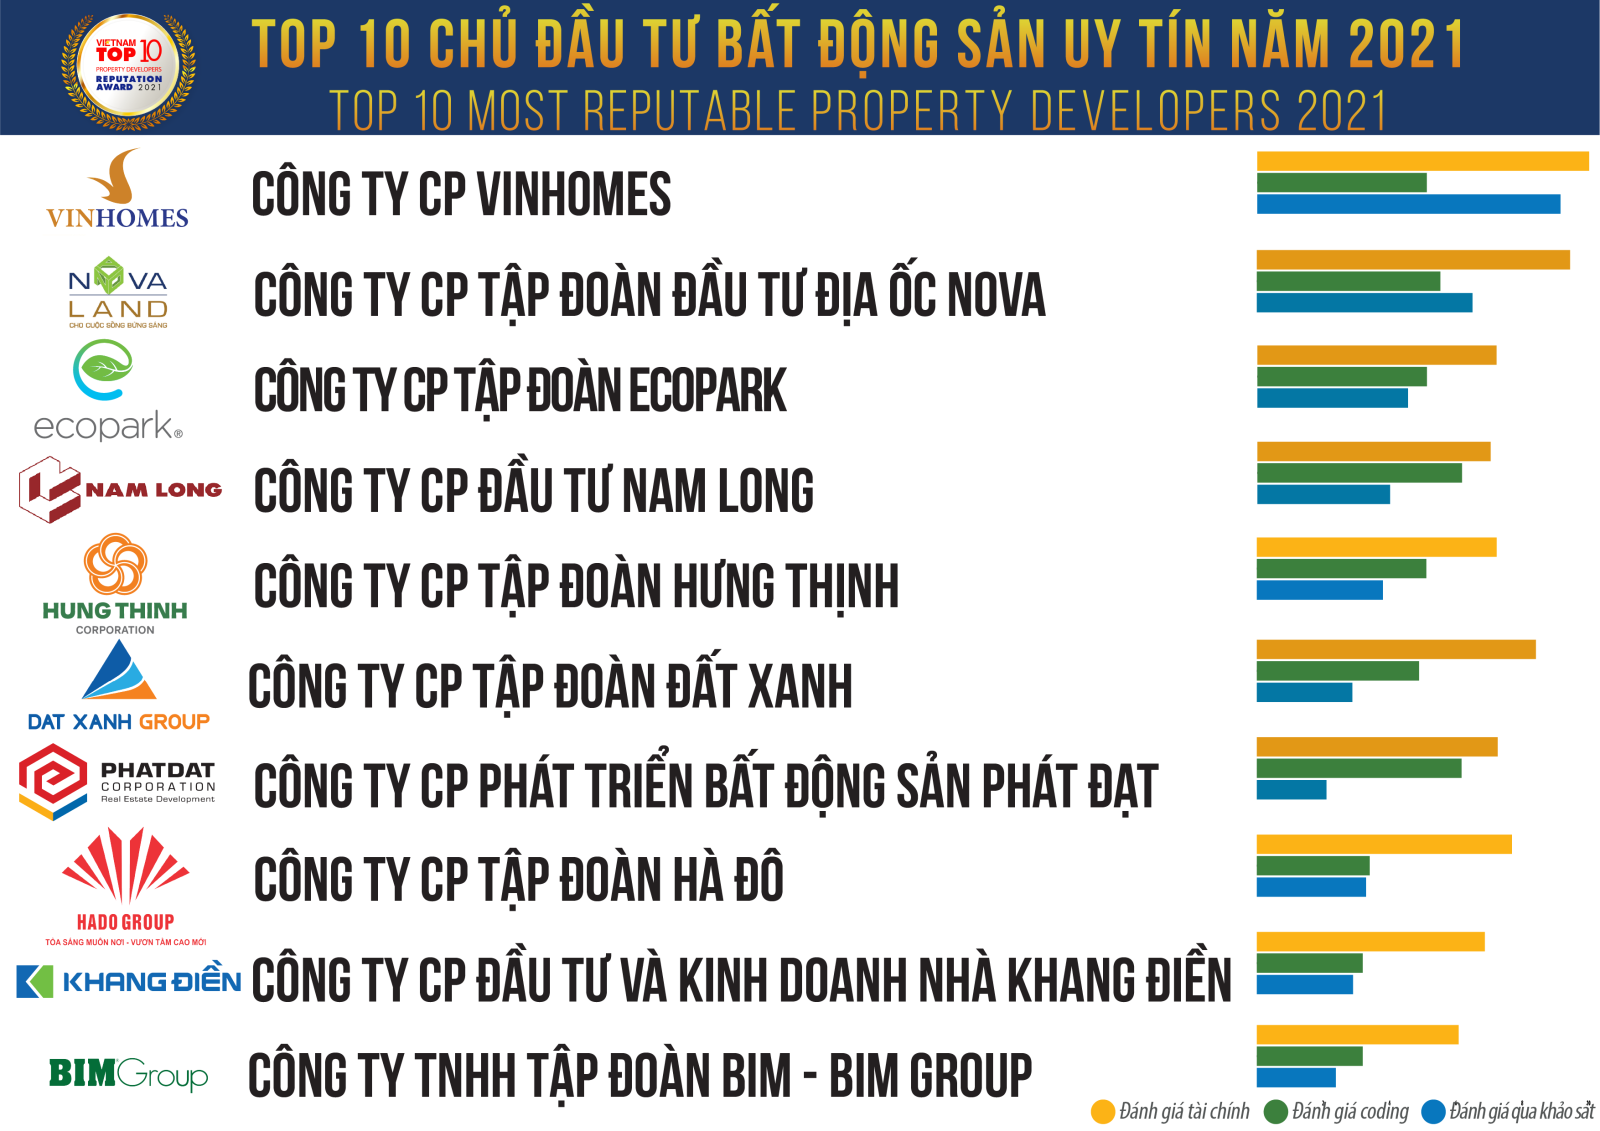 Tập đoàn Hà Đô tiếp tục nằm trong TOP 10 Chủ đầu tư BĐS uy tín Việt Nam năm 2021